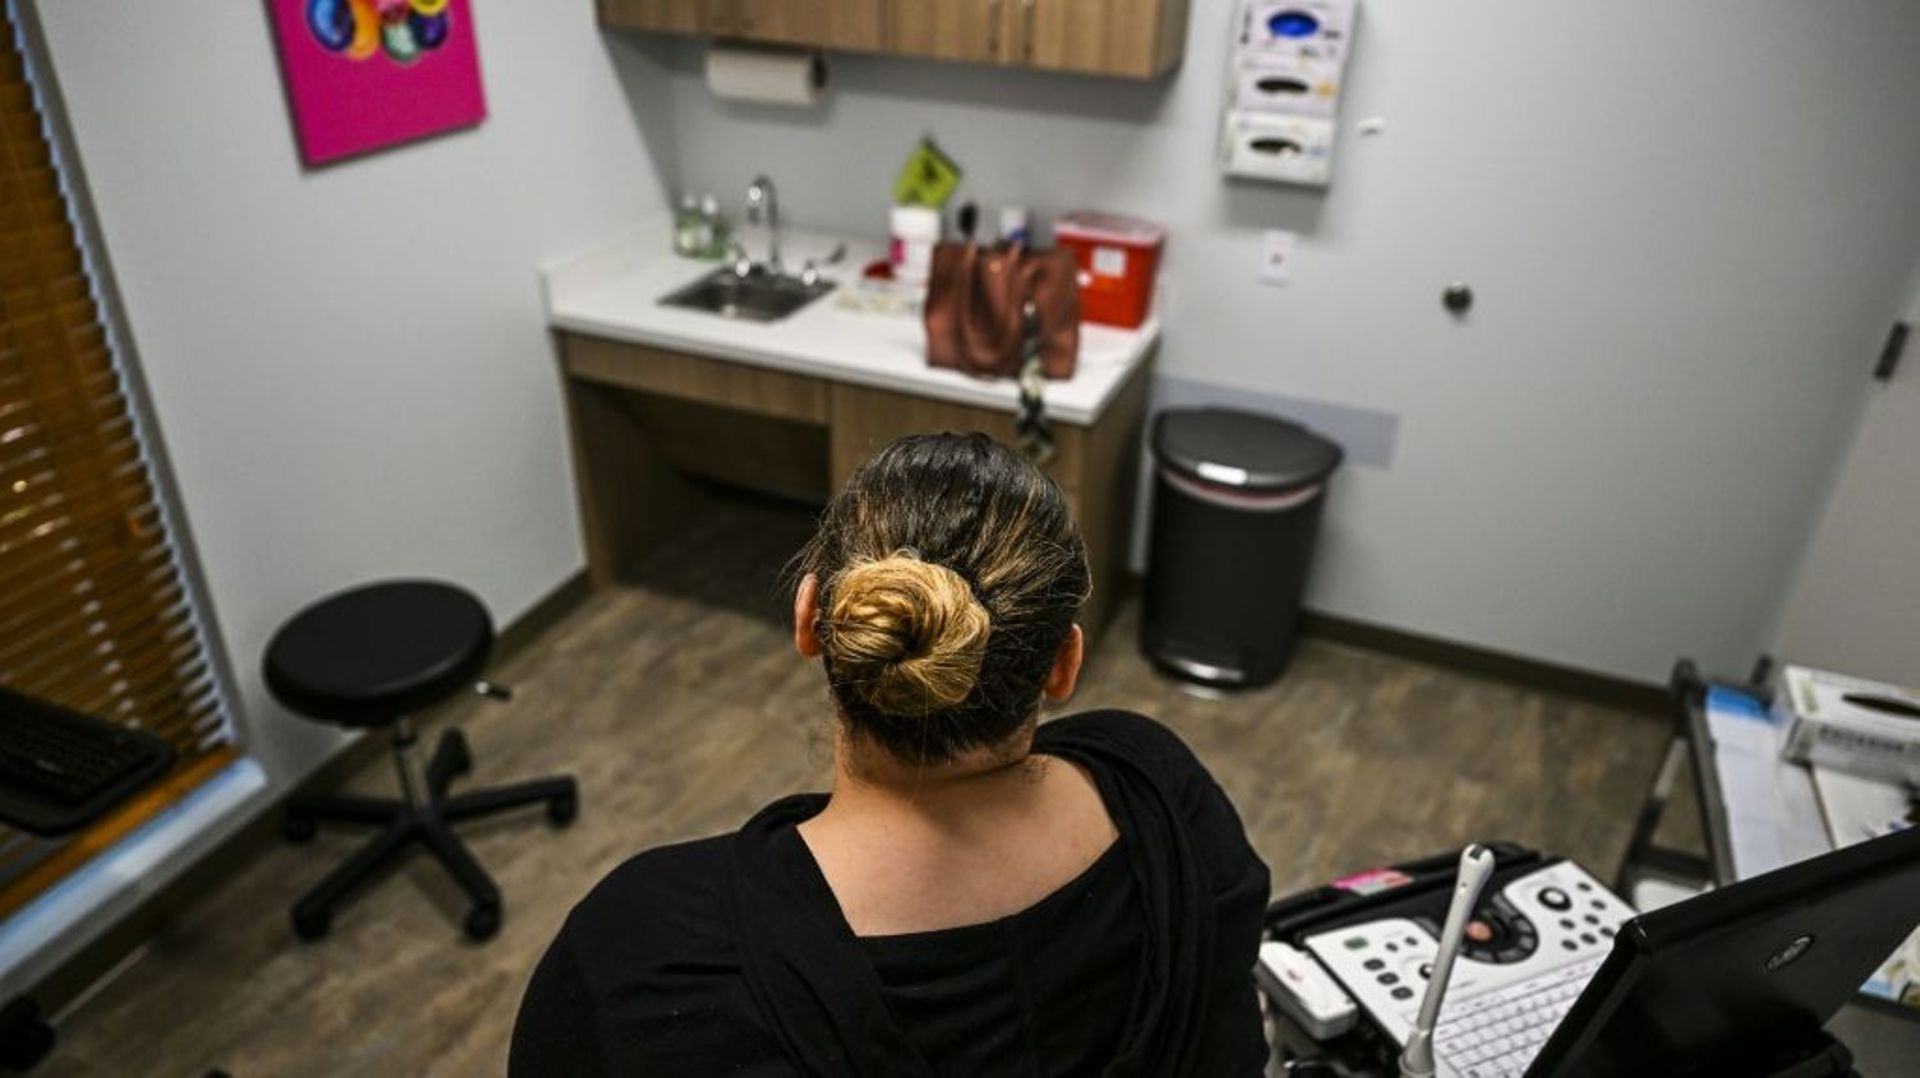 Une femme attend avant de subir un avortement dans une clinique de West Palm Beach, le 14 juillet 2022 en Floride 